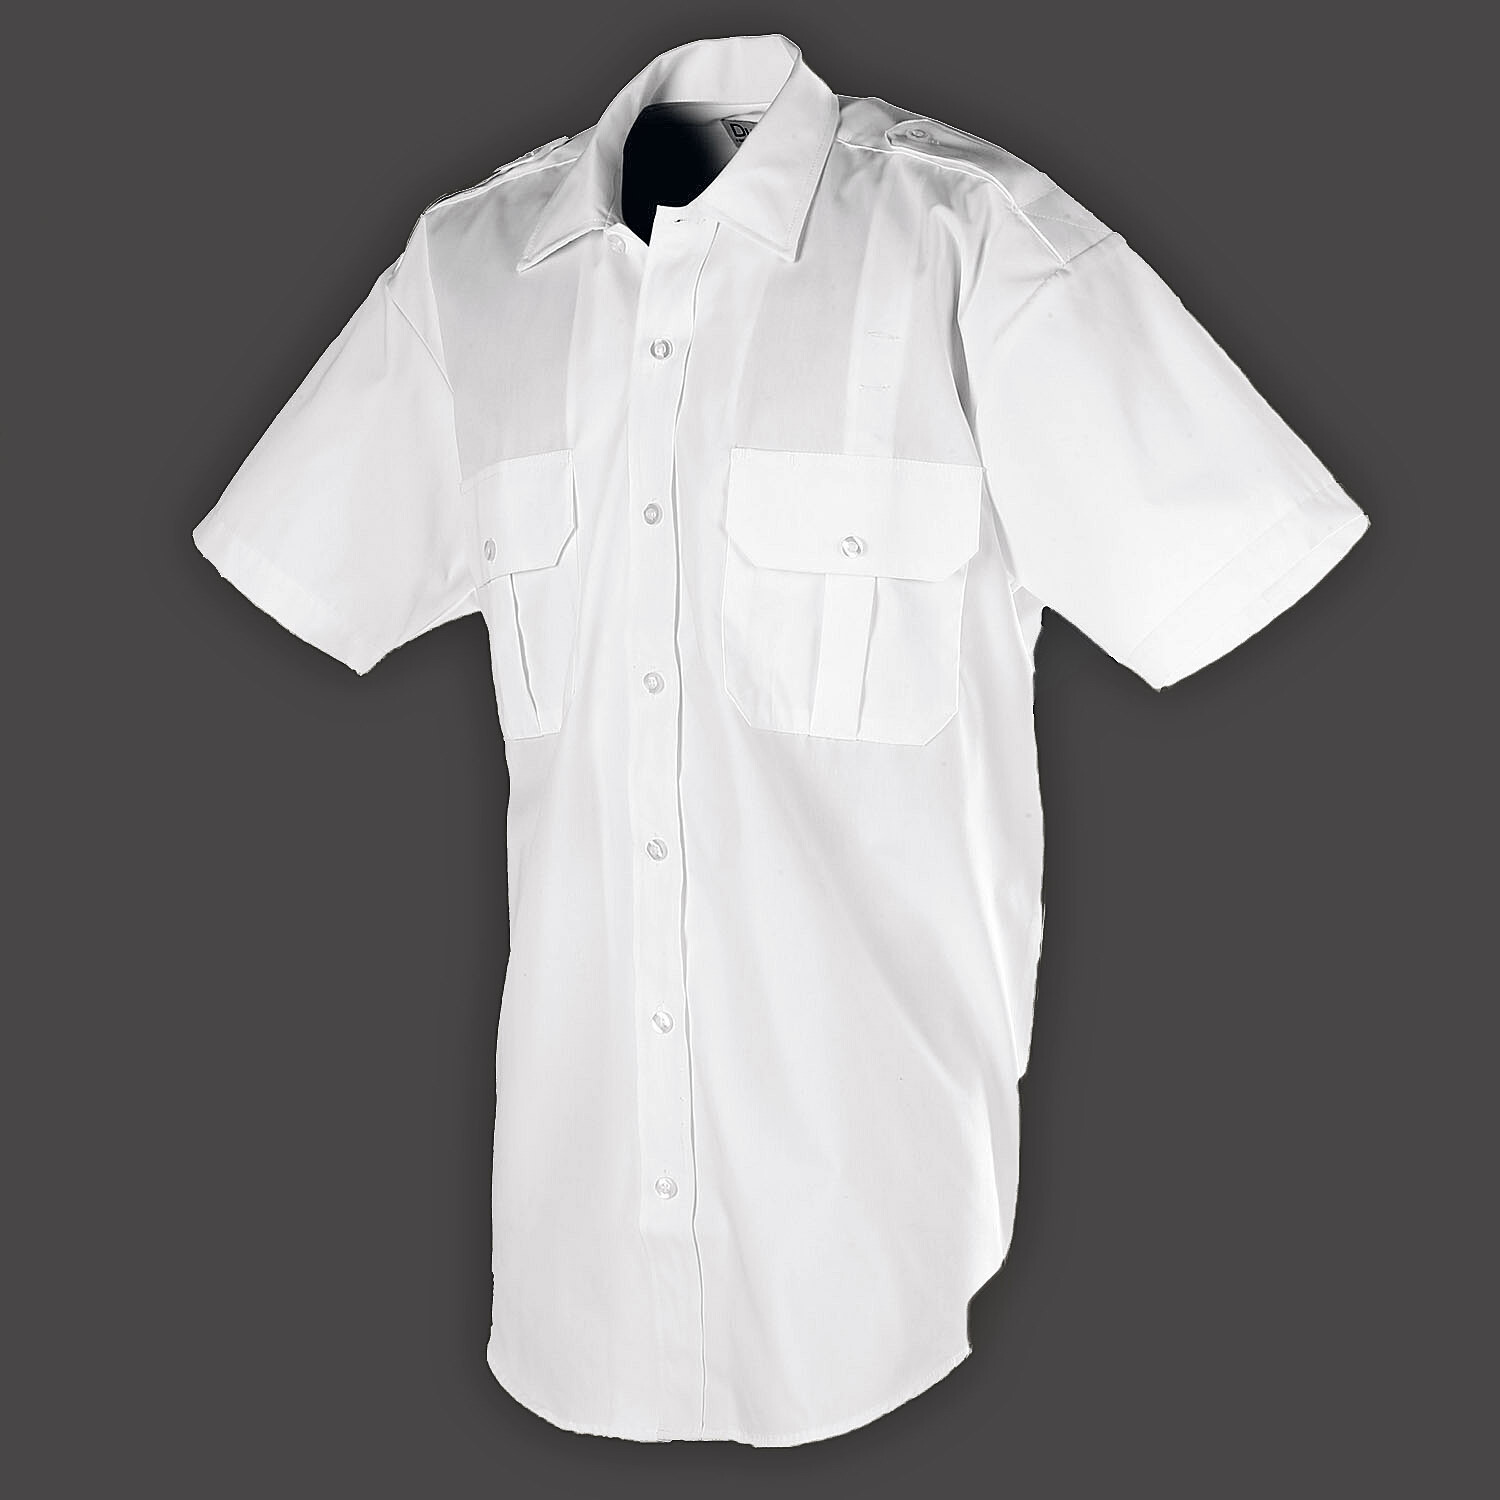 White Short Sleeve Shirt for Summer Uniform